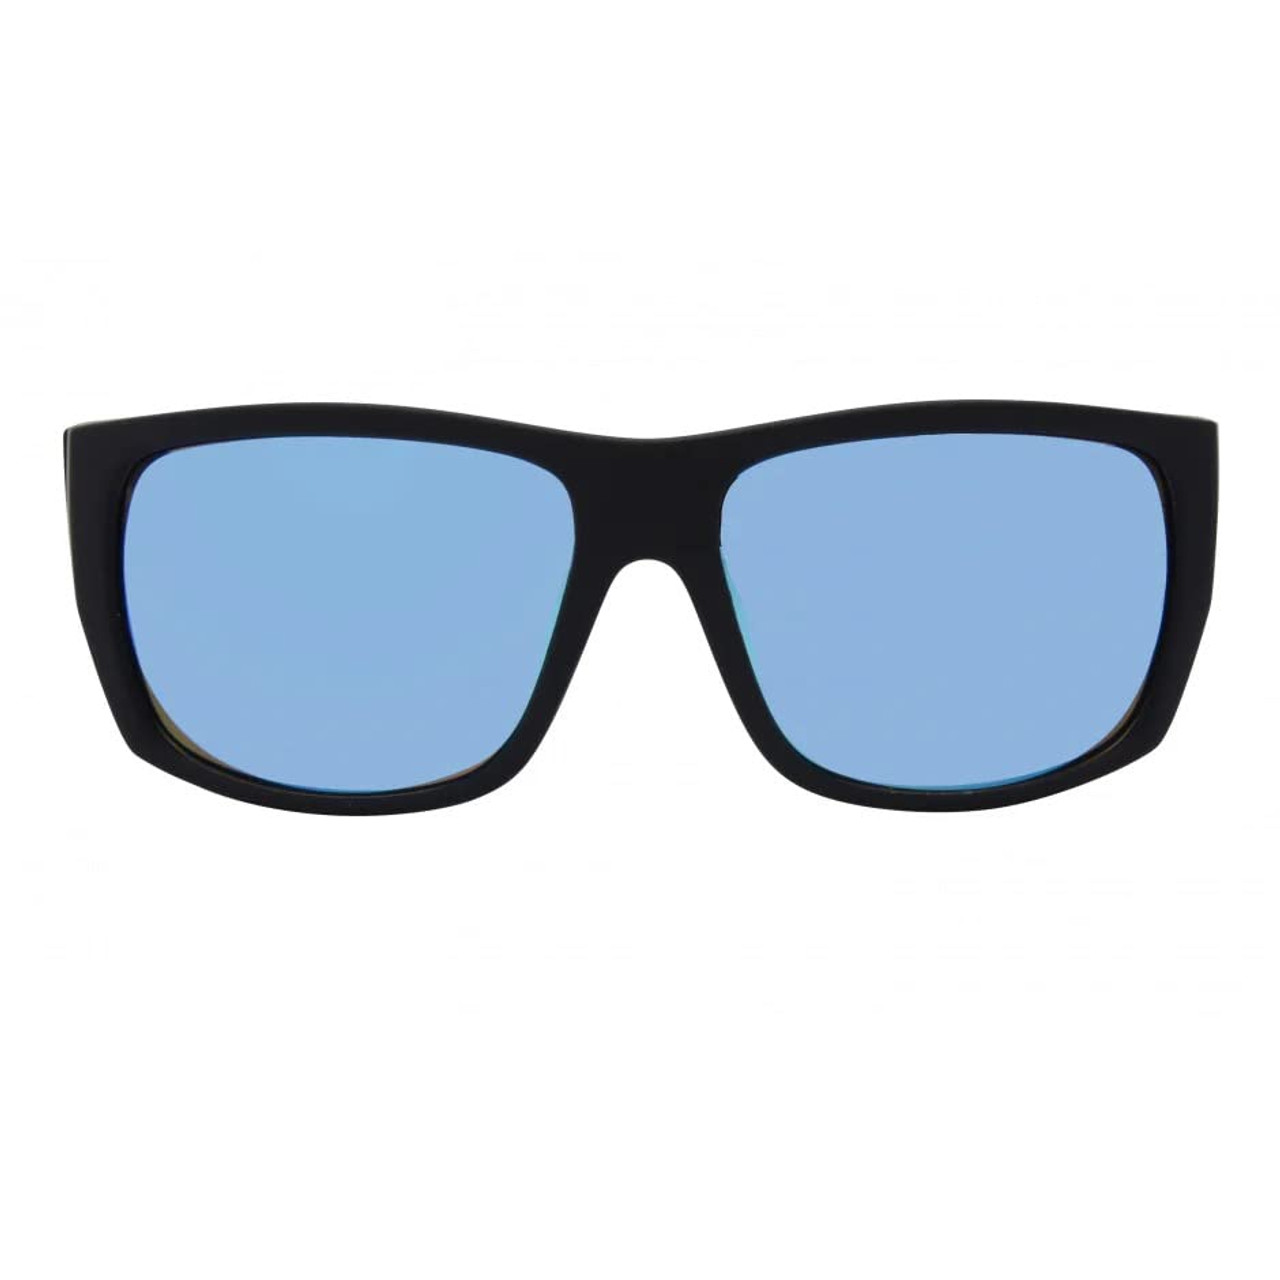 I-SEA Sunglasses - Captain - Black/Blue